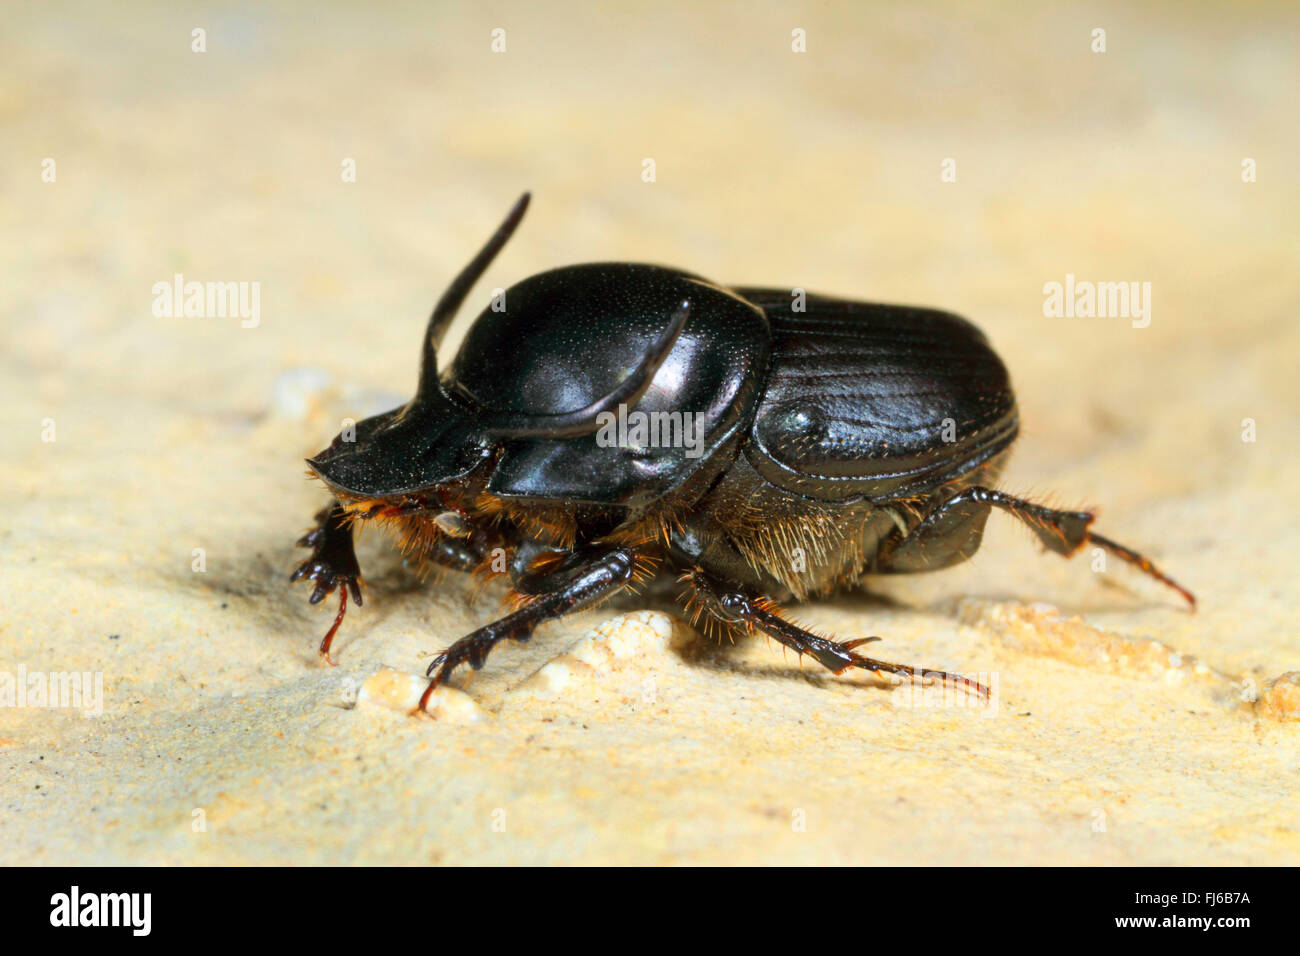 Escarabajos, Tauro scarab, con cabeza de Toro, escarabajos del estiércol (Escarabajos Bullhorned Onthophagus taurus), macho, Alemania Foto de stock